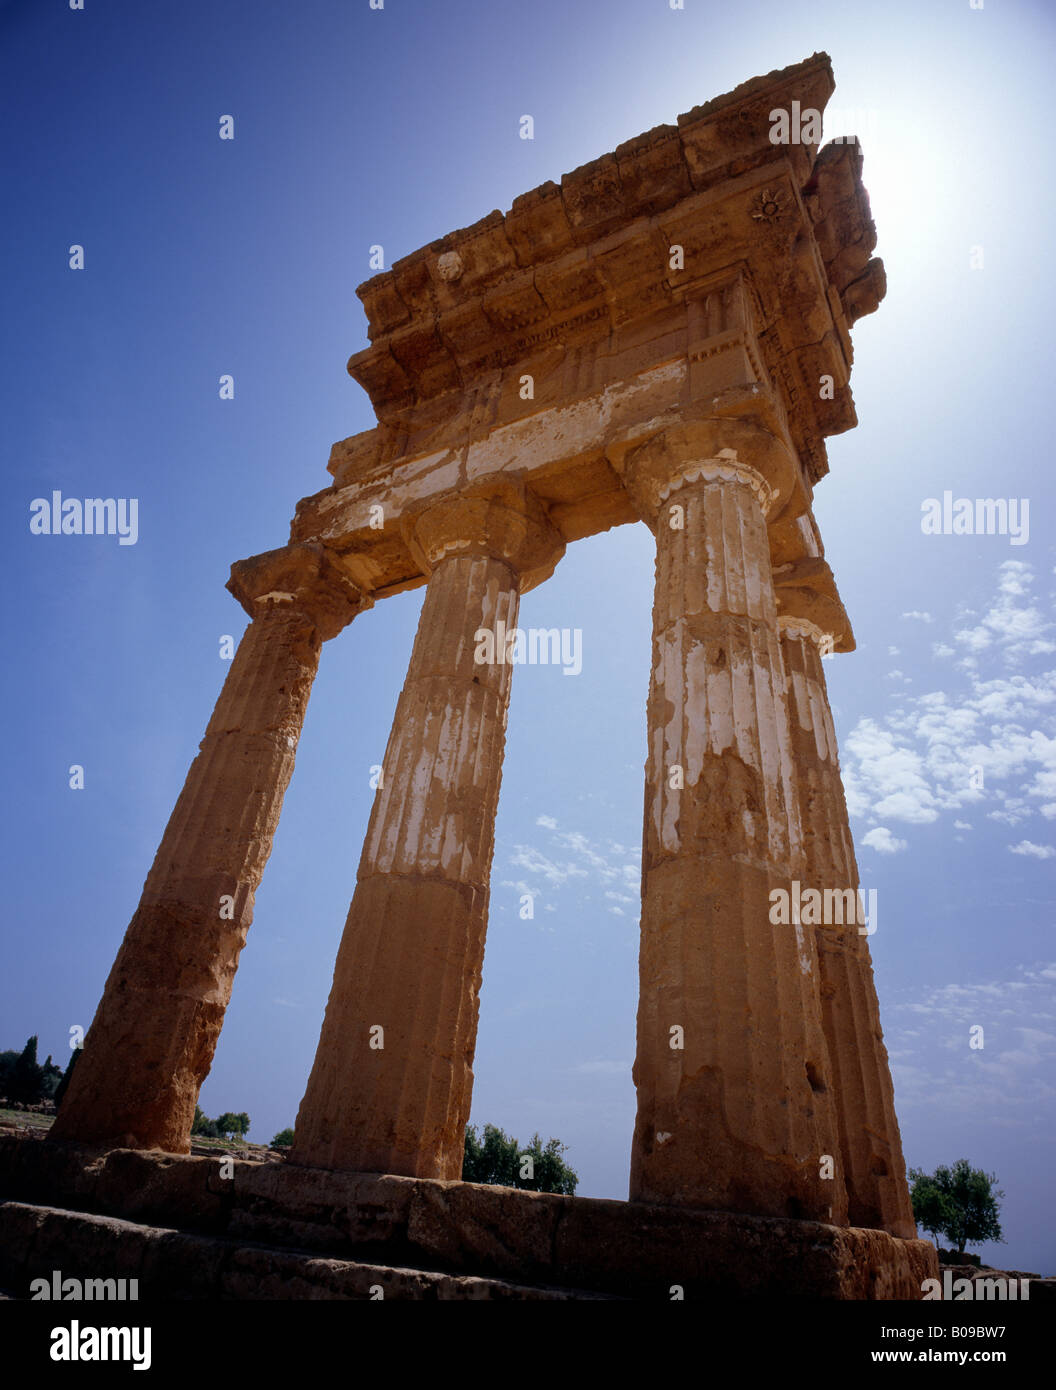 El templo de dioscuri, Castor y Pólux, Valle de los Templos de Agrigento Sicilia Italia UE. Foto de stock